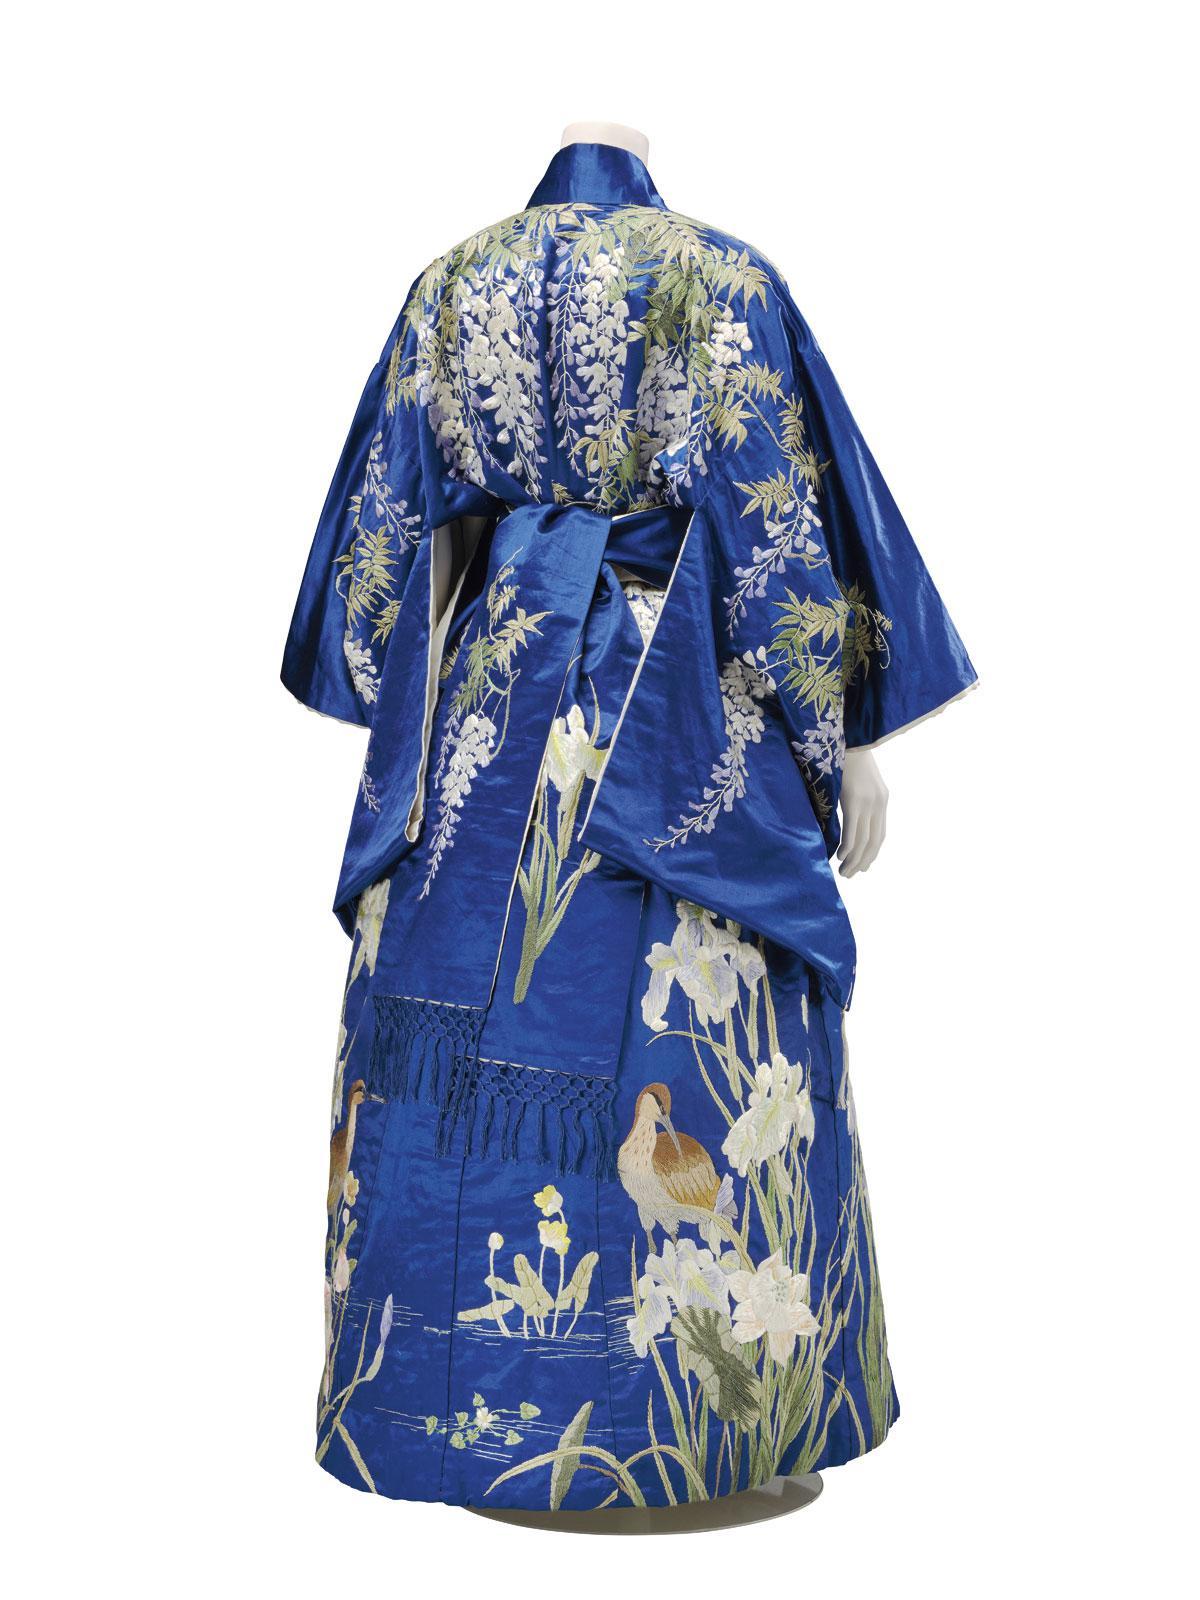 Kimono pour export, probablement Kyoto, 1905-15.